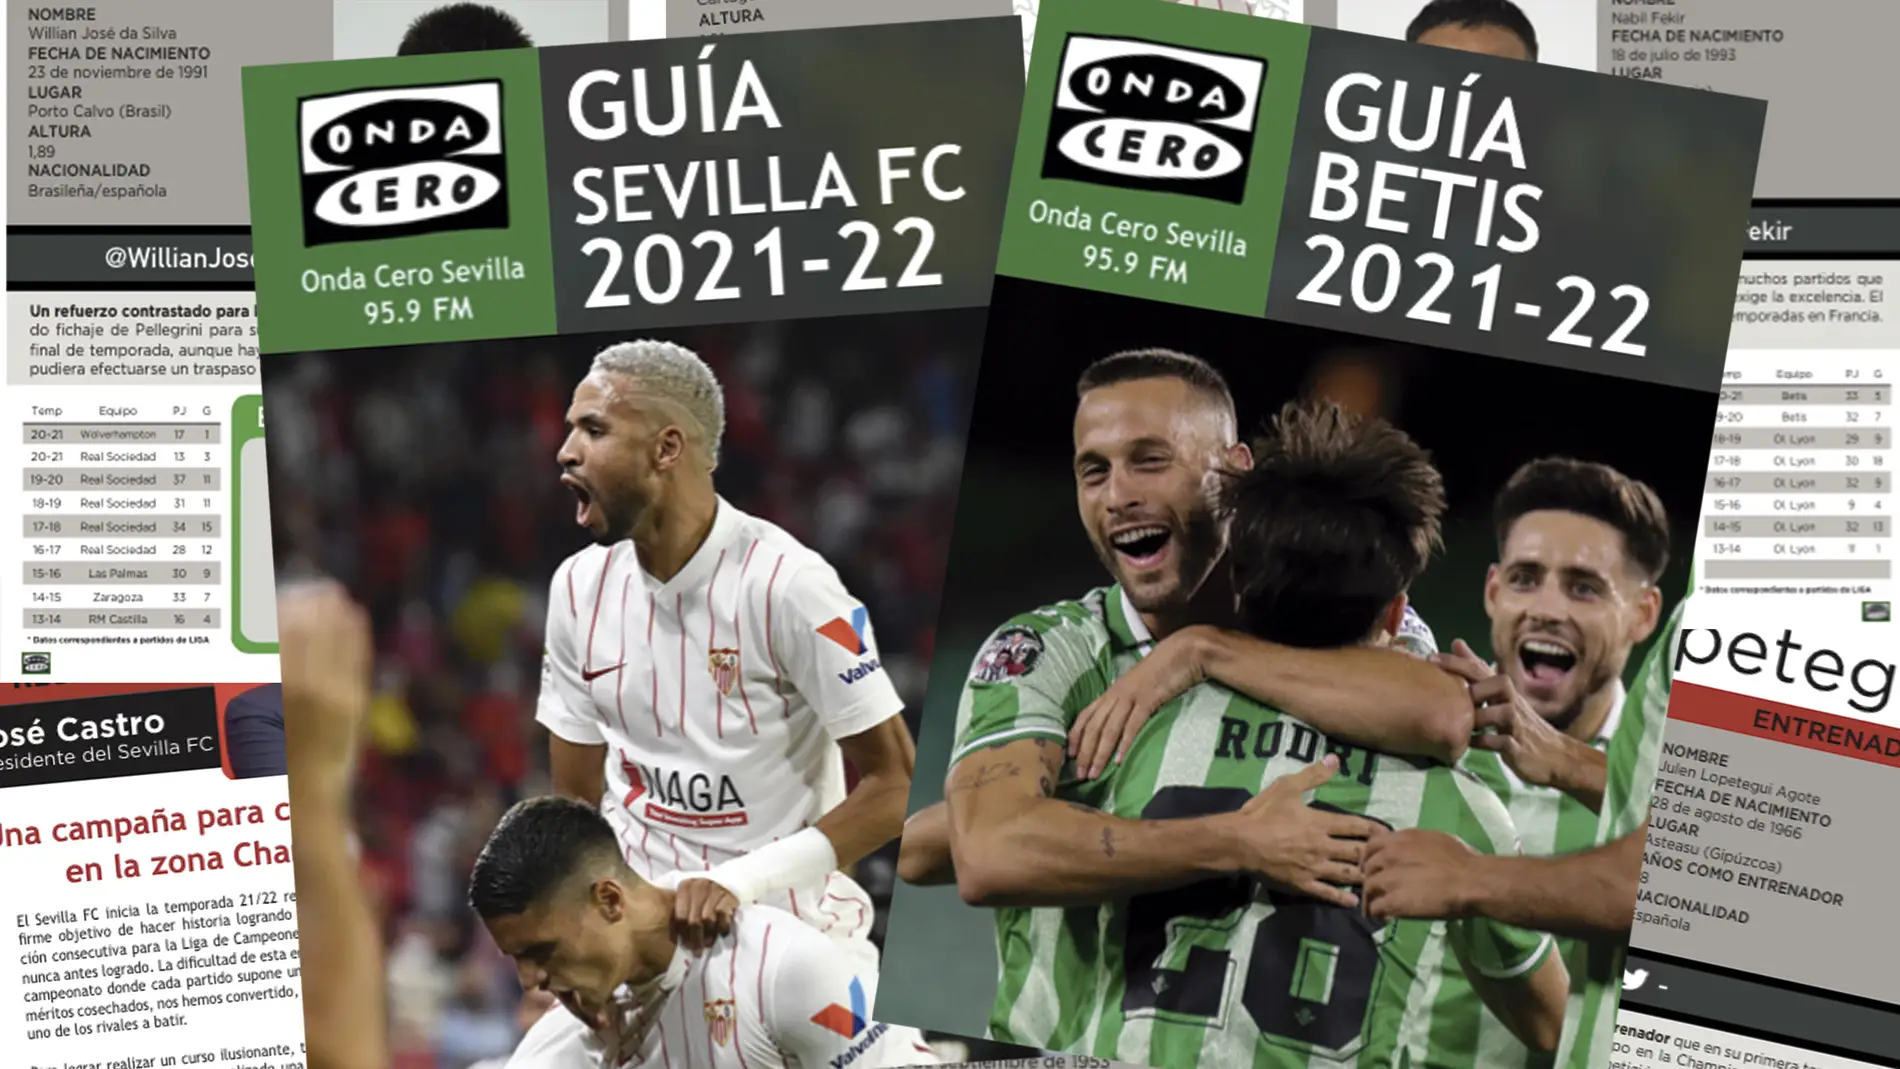 Guías Onda Cero Sevilla de Sevilla y Betis 2021-2022.